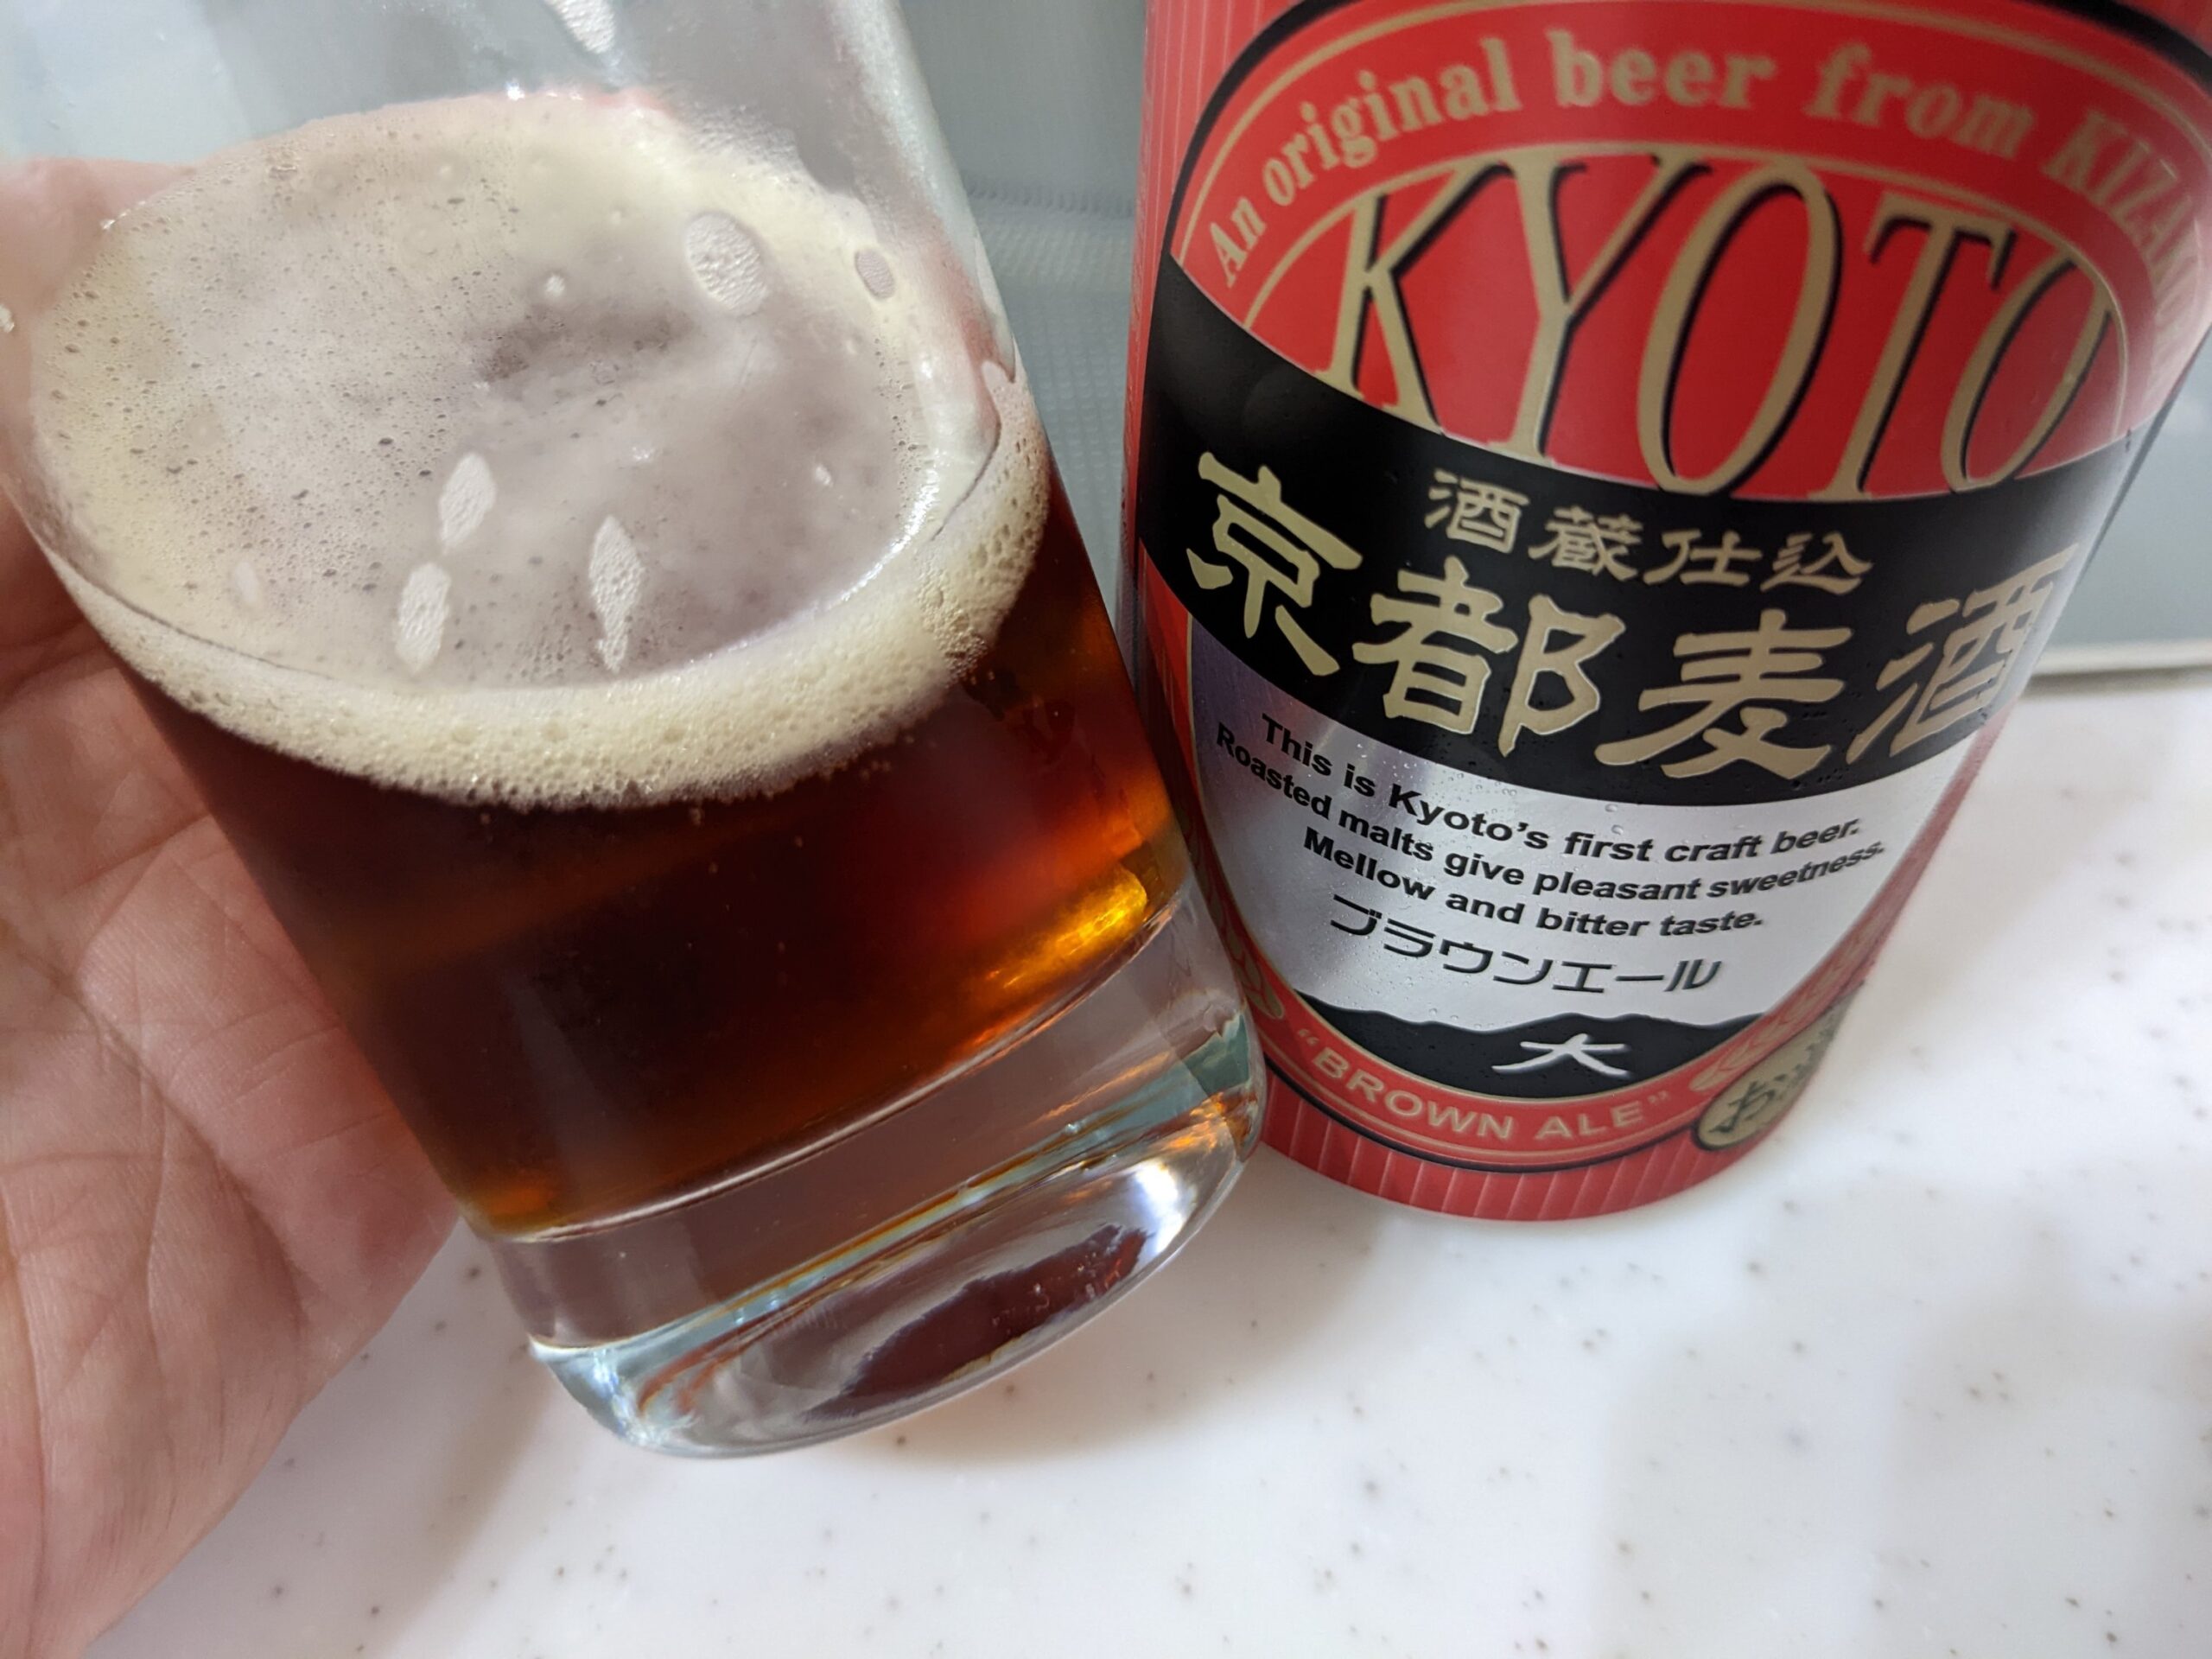 残り2割程の「京都麦酒ブラウンエール 」が入ったグラス